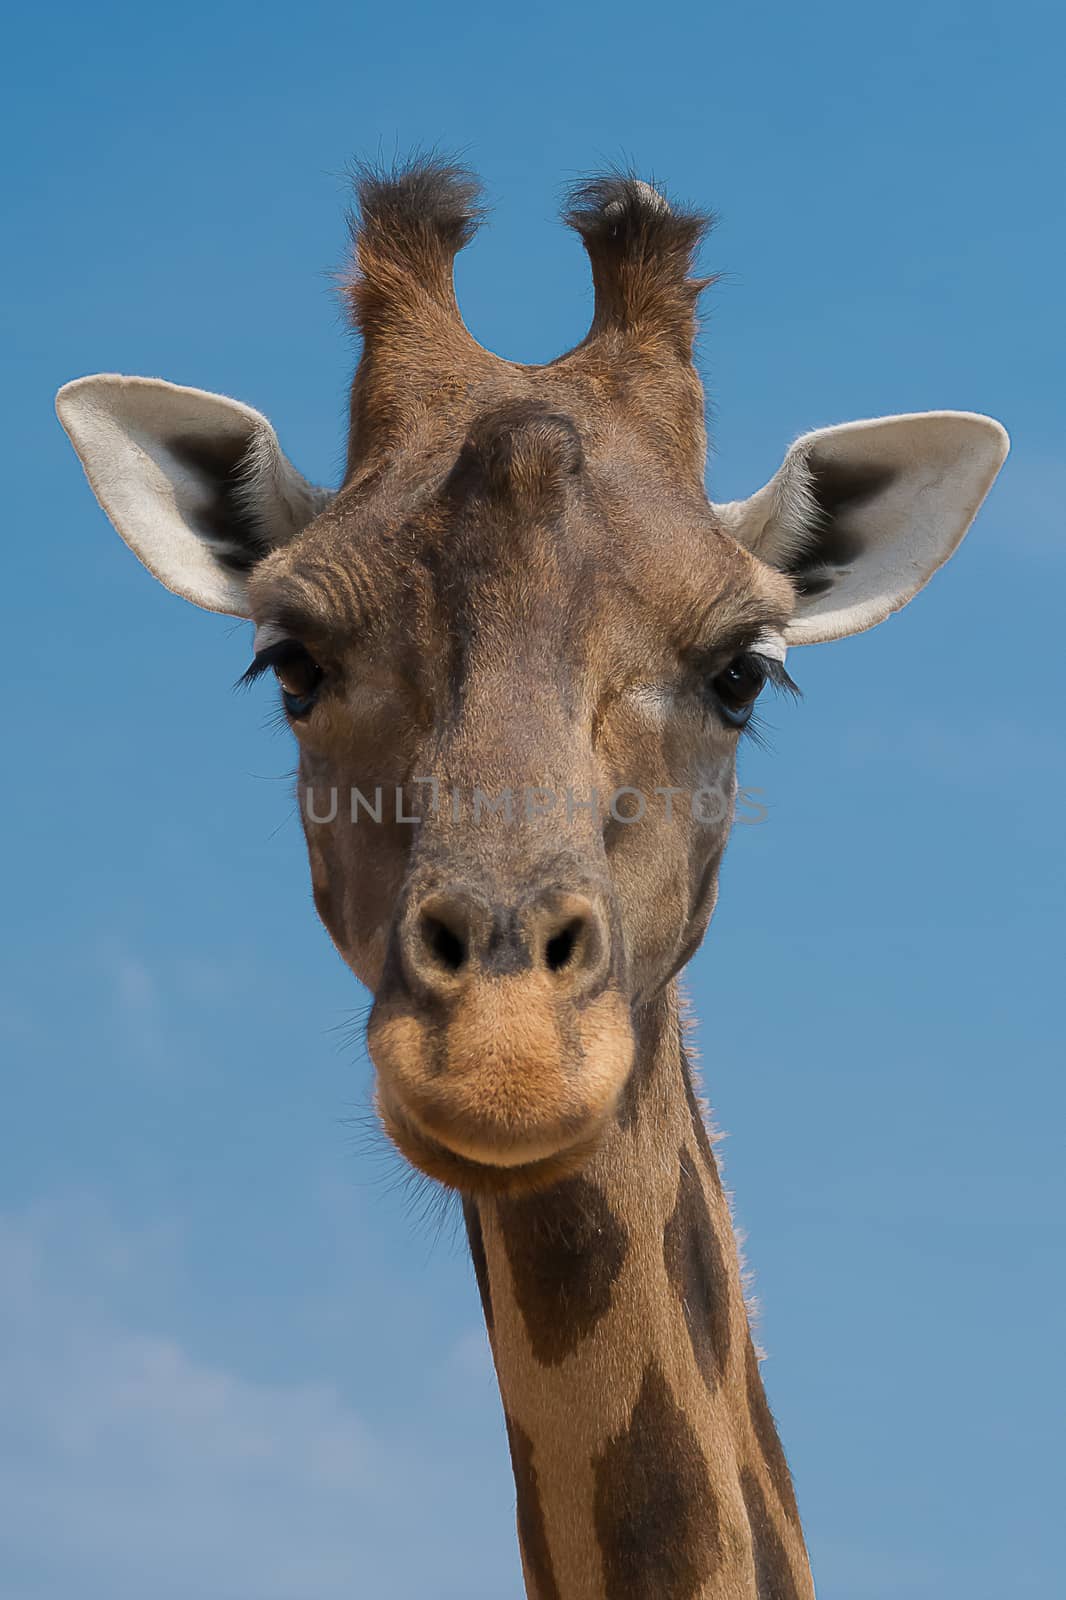 Giraffe by cedicocinovo